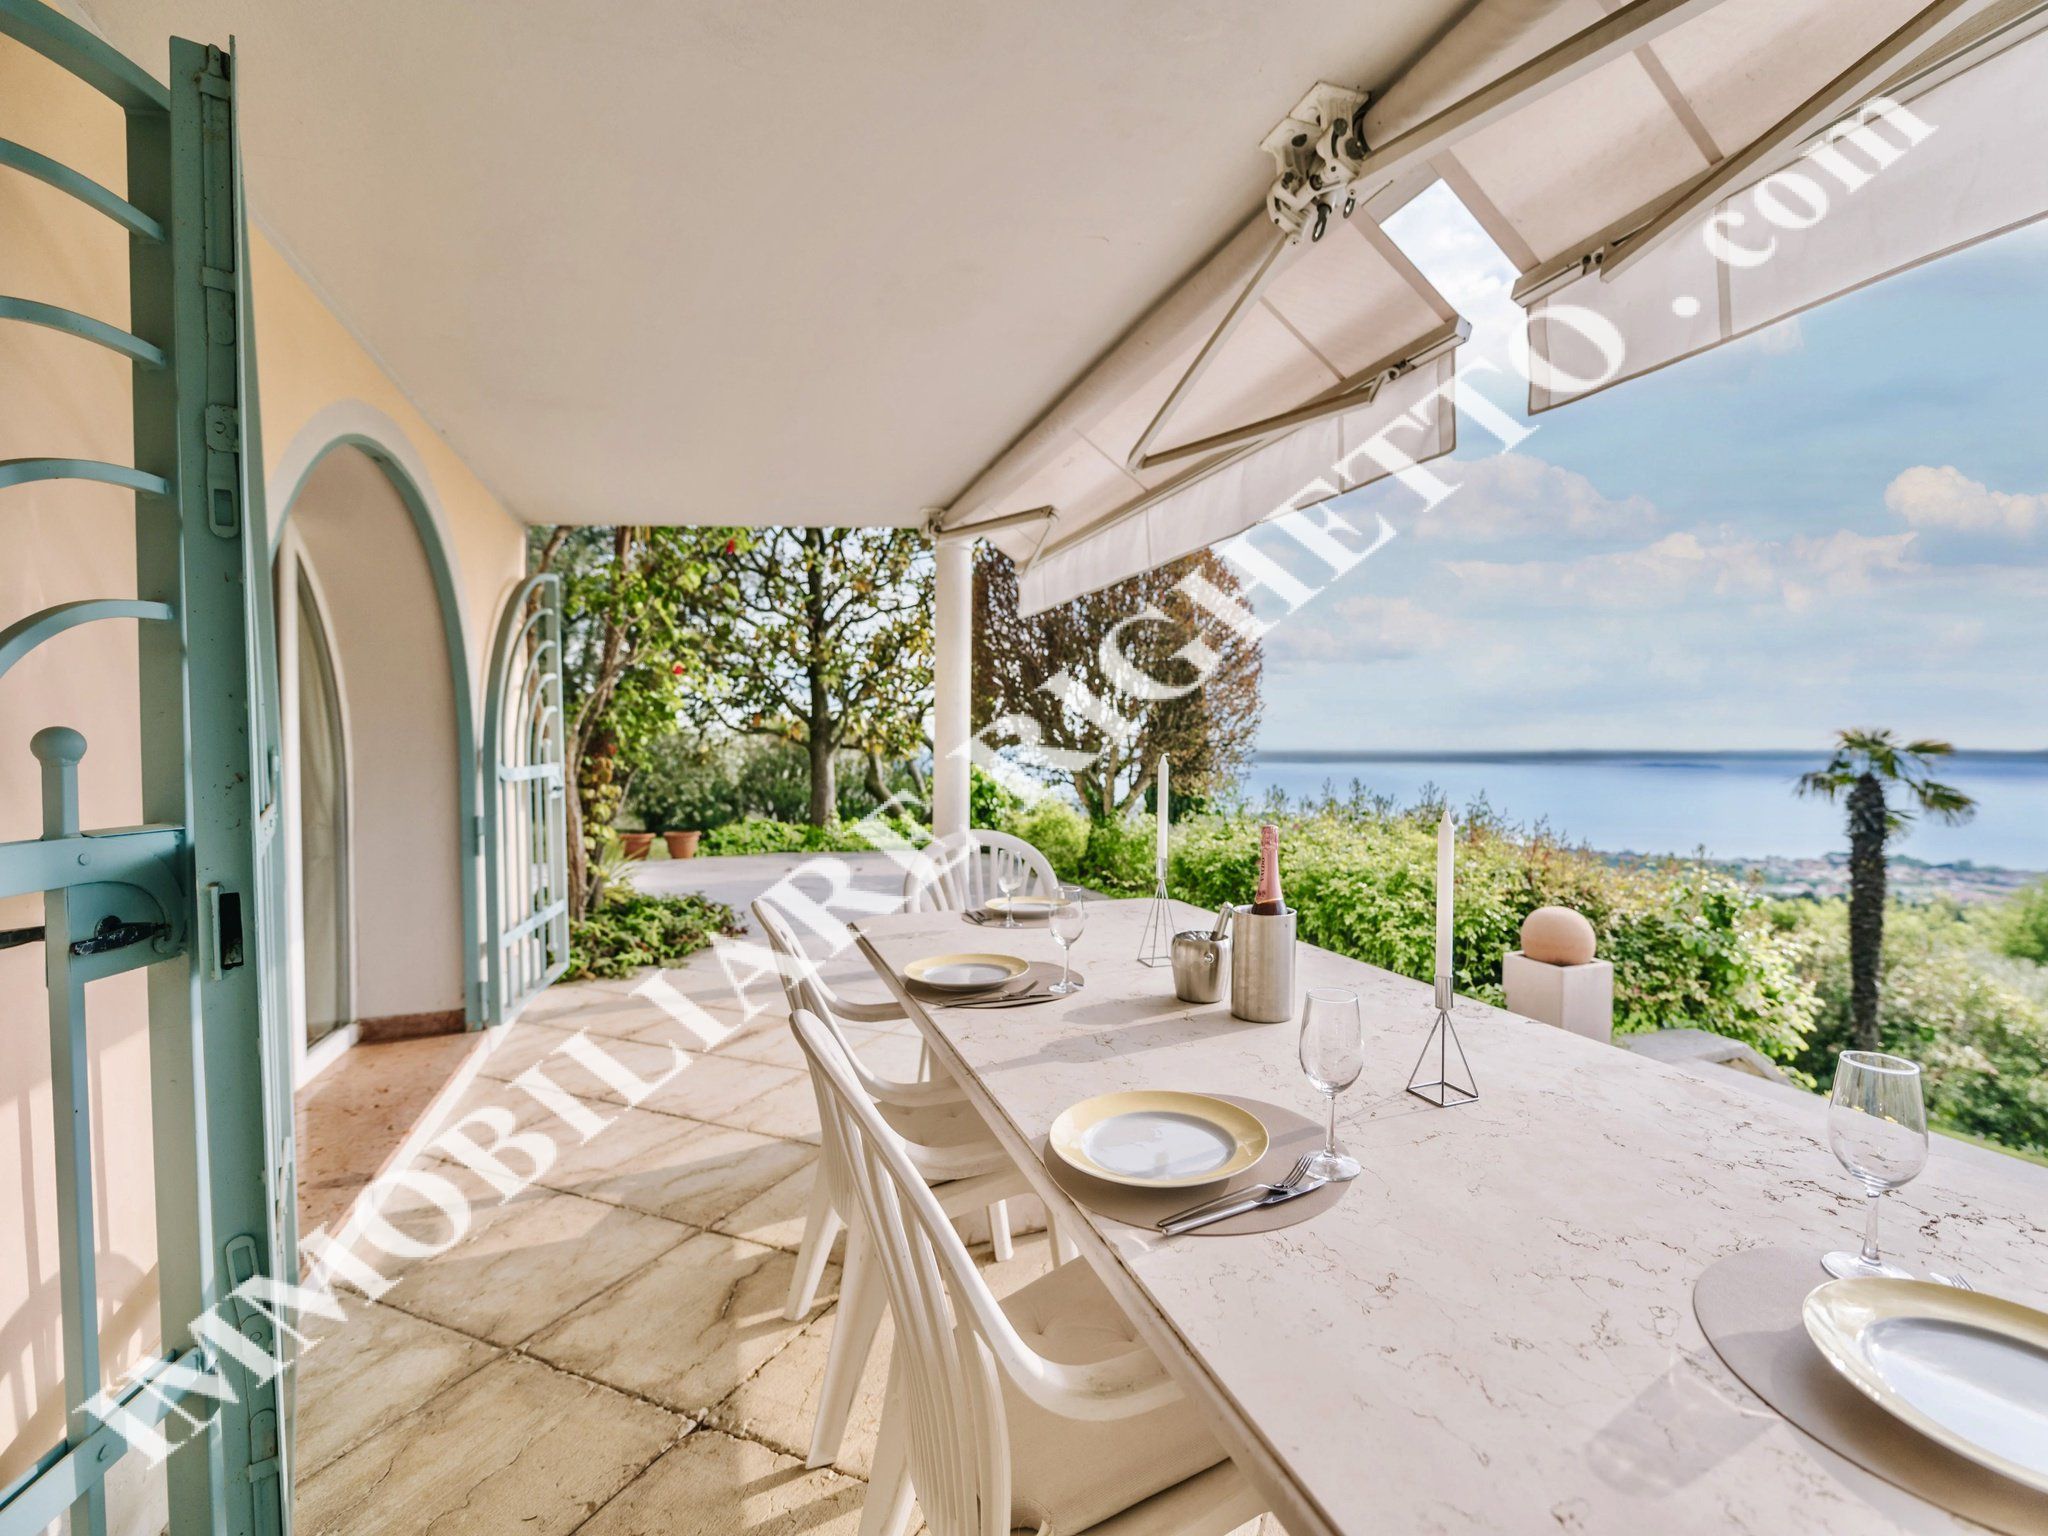 Immobilien zum Verkauf anbieten Herrliche freistehende Villa mit glanzvollem 180° PANORAMABLICK AUF DEN SEE